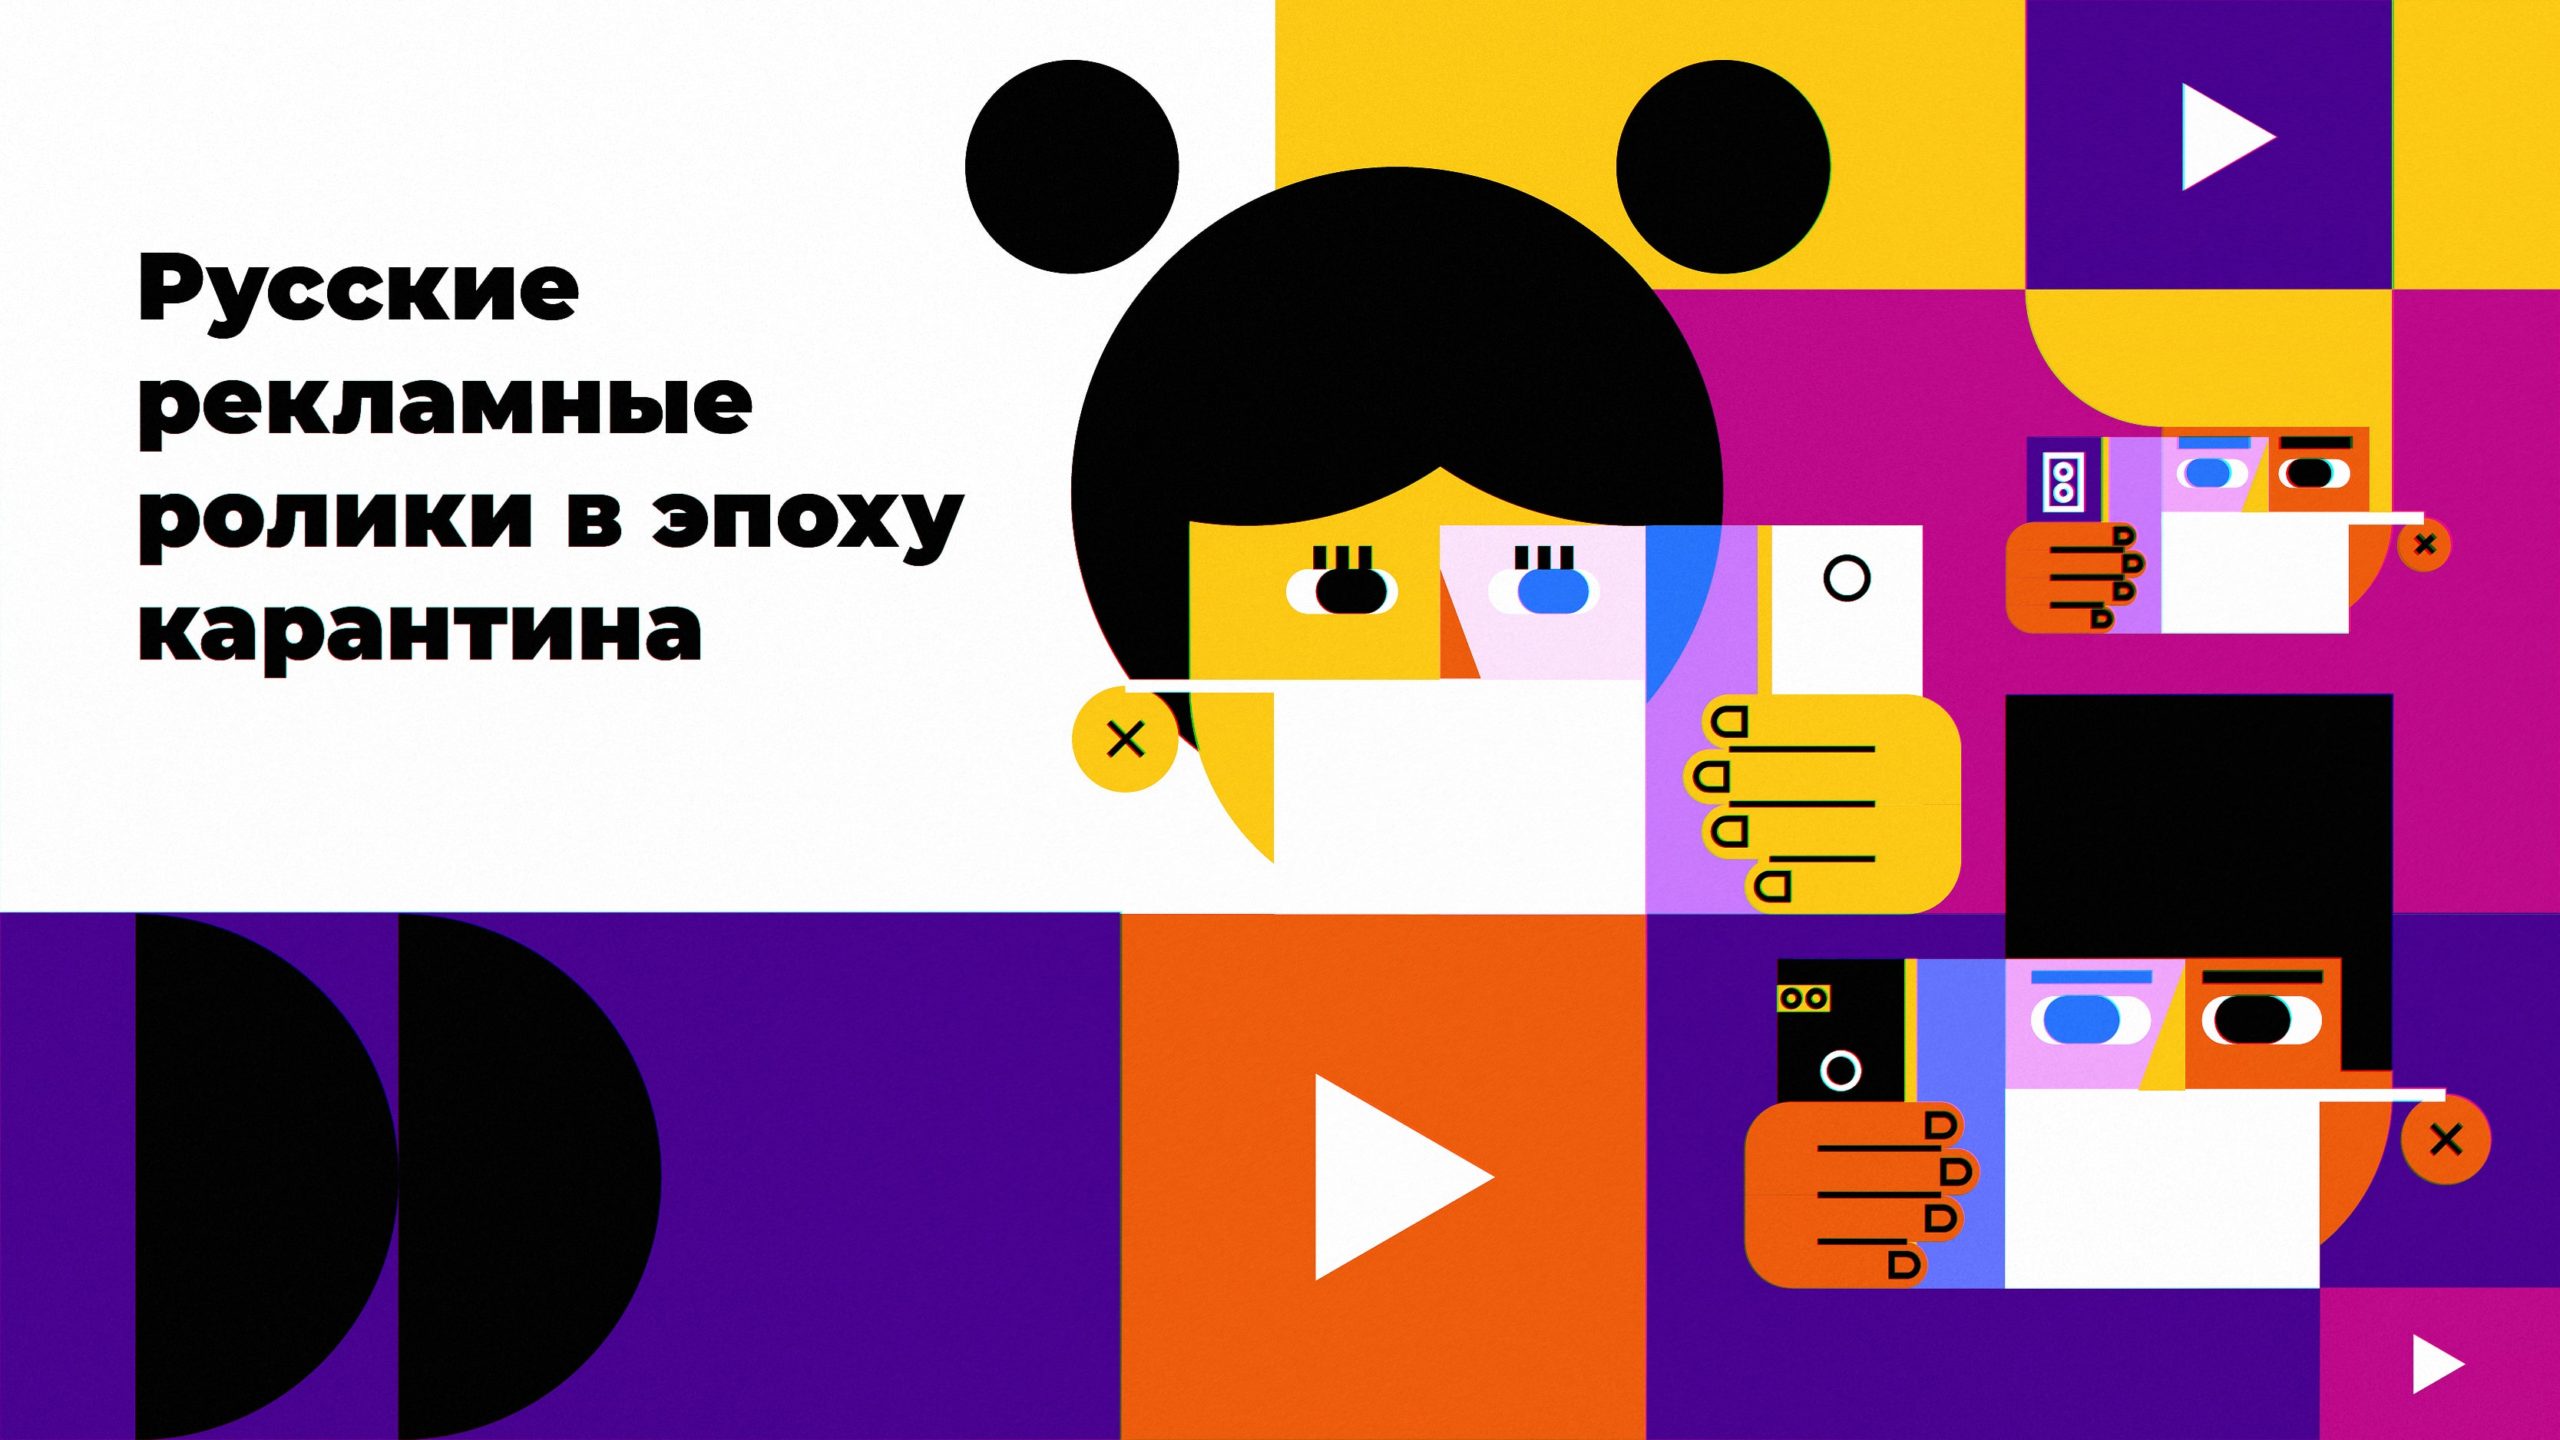 Русские рекламные ролики в эпоху карантина